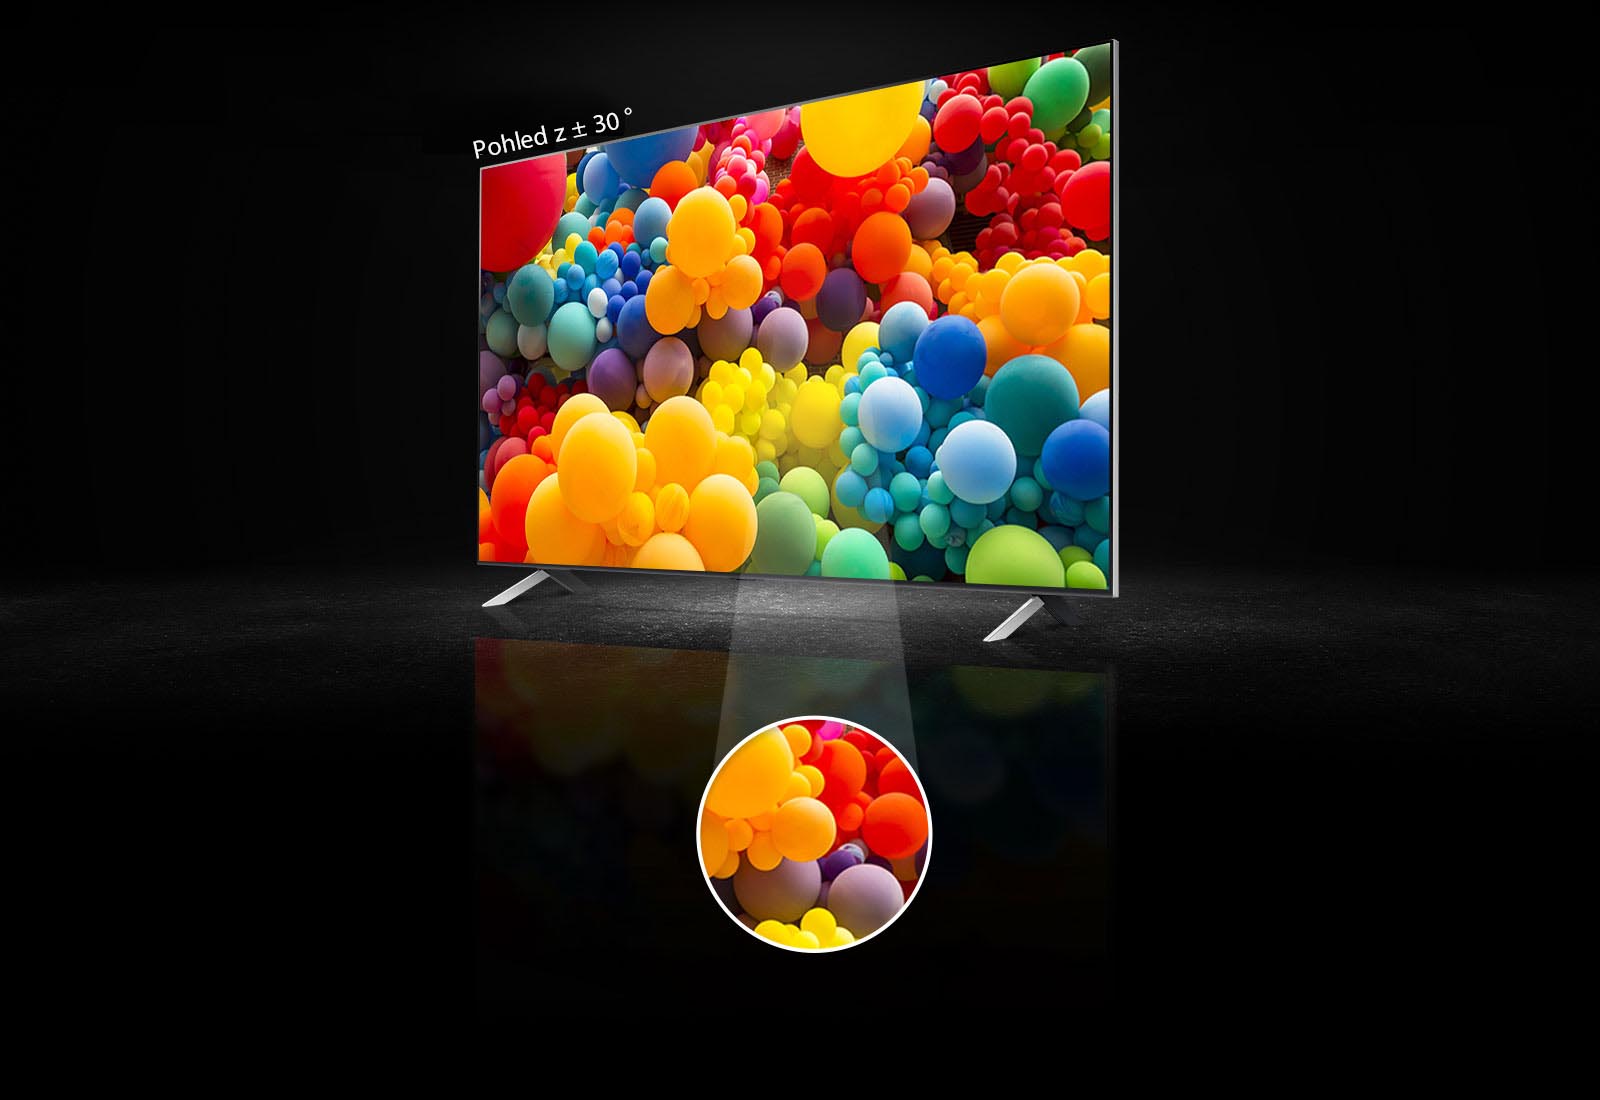 Pohled zboku na obrazovku QNED. Na obrazovce je změť duhových barevných balónků. V horní části televizoru je uvedeno „plus minus 30 stupňů“. Střední část obrazovky je zvýrazněna v samostatné kruhové oblasti.